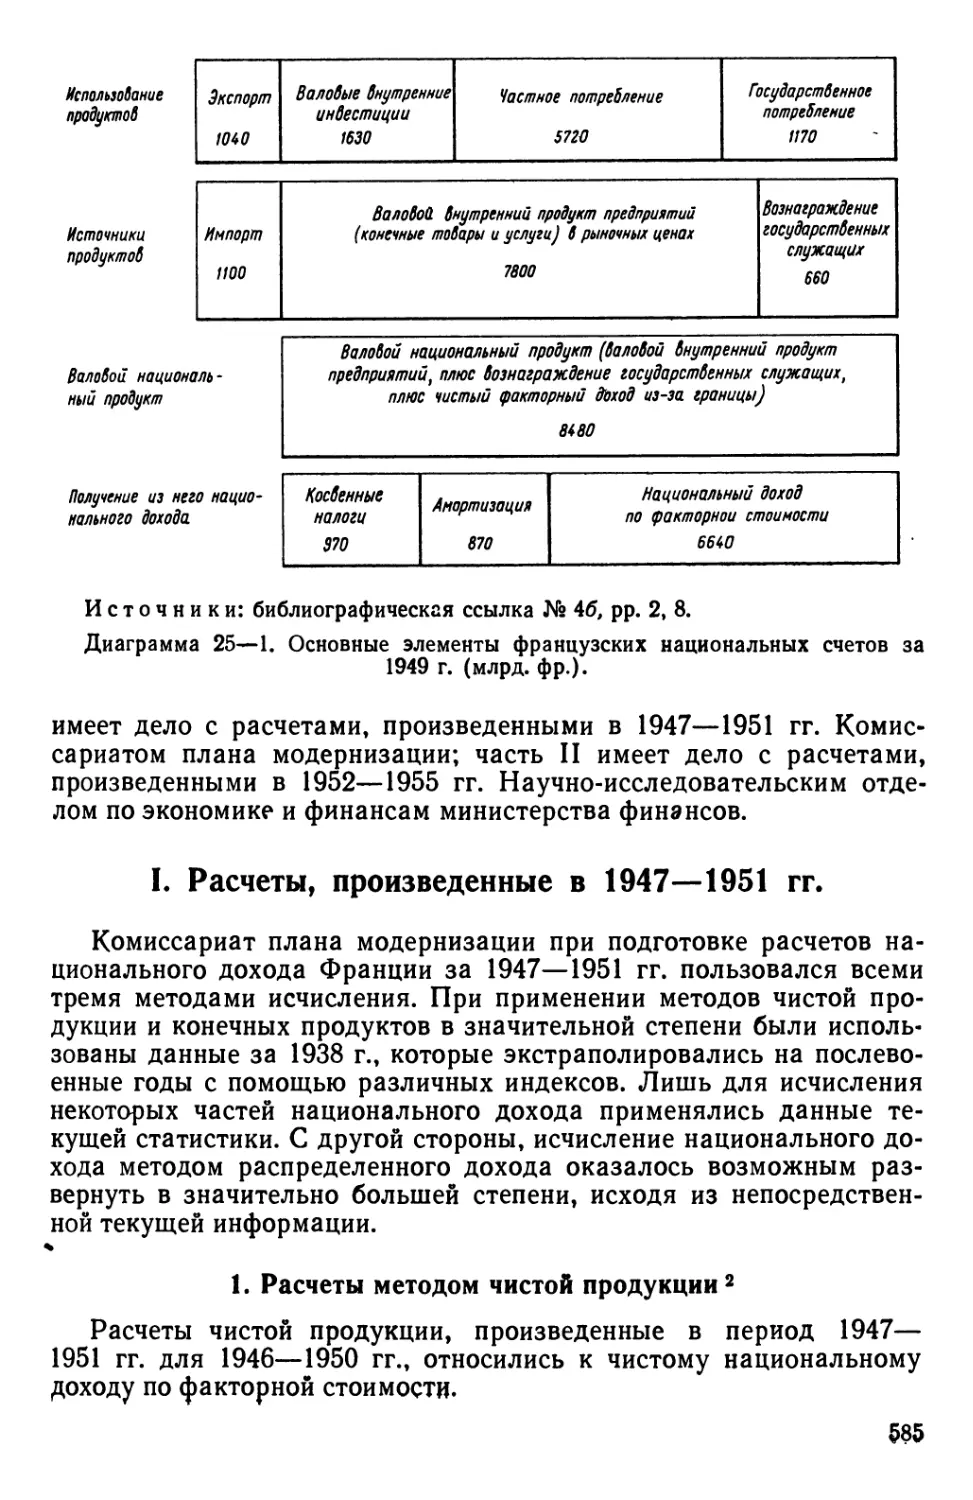 I. Расчеты, произведенные в 1947—1951 гг